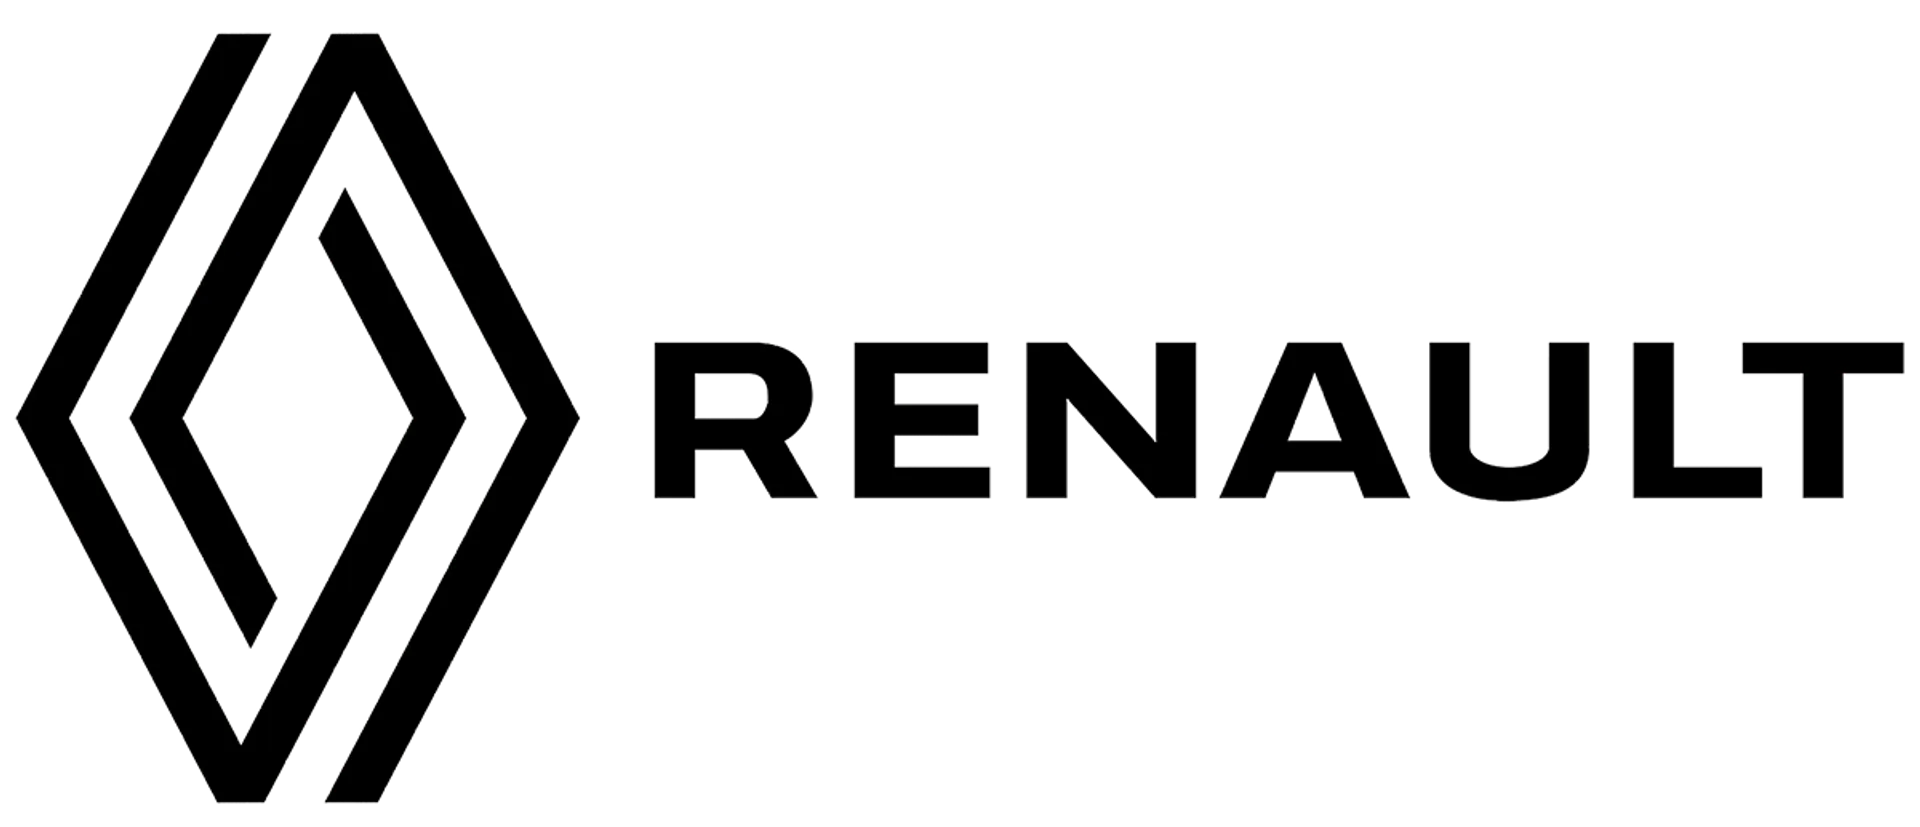 RENAULT logo de folhetos